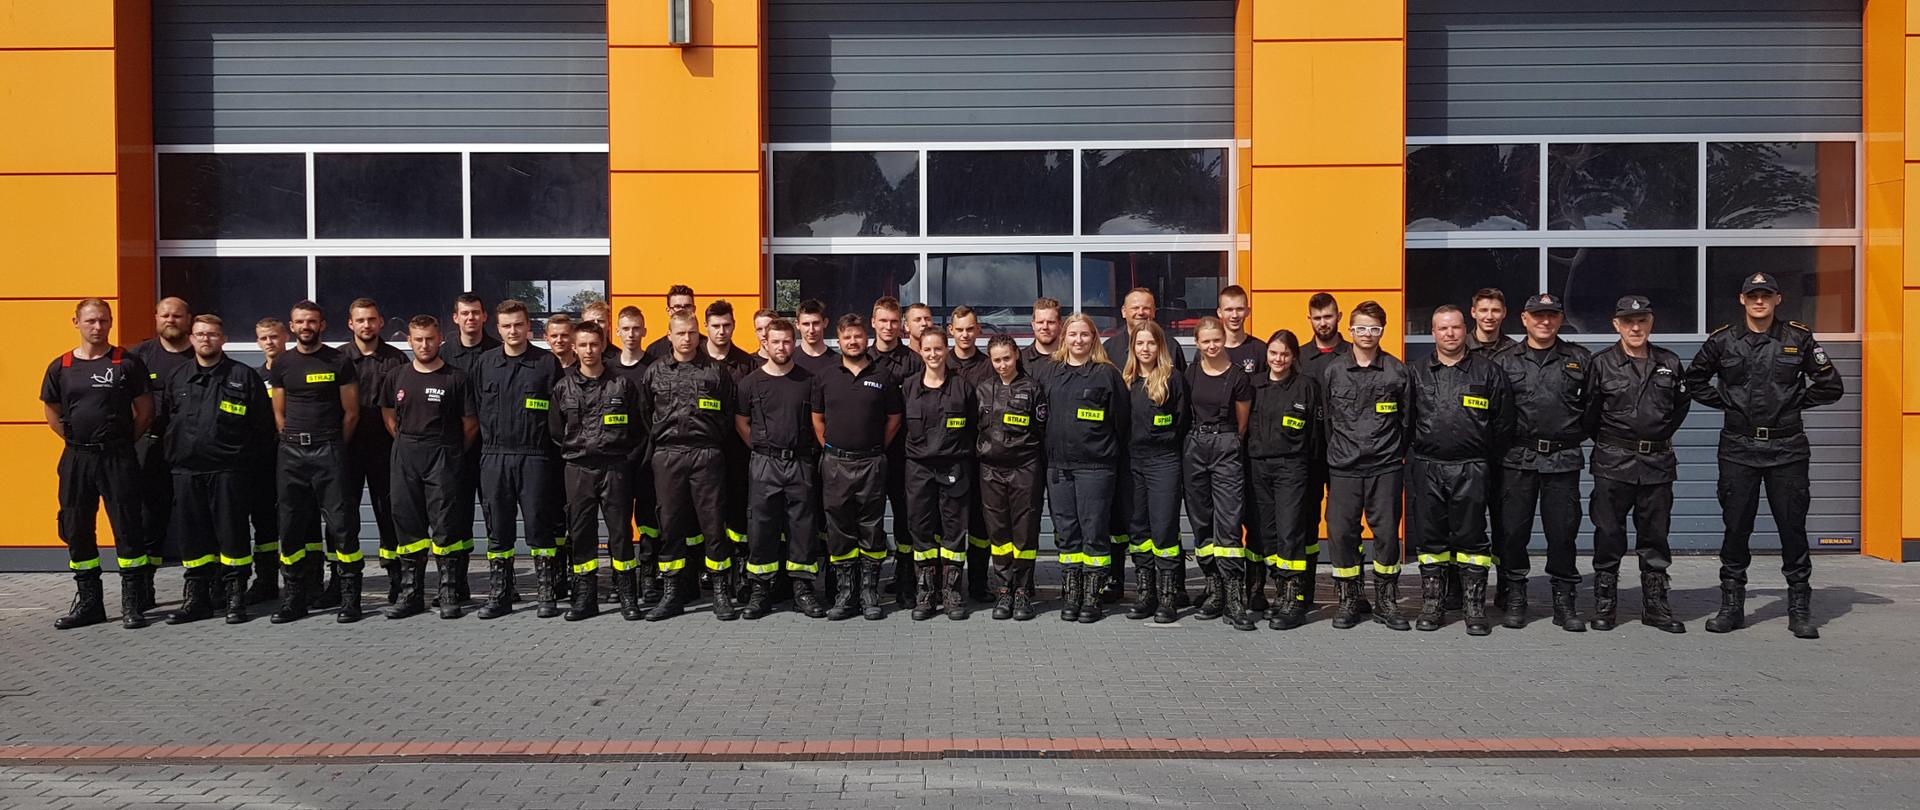 Pamiątkowe zdjęcie 36 kursantów, którzy chwilę temu pomyślnie ukończyli szkolenie podstawowe strażaków-ratowników OSP. Wraz z komisją egzaminacyjną, pozują w dwuszeregu przed bramami wyjazdowymi wolsztyńskiej jednostki.